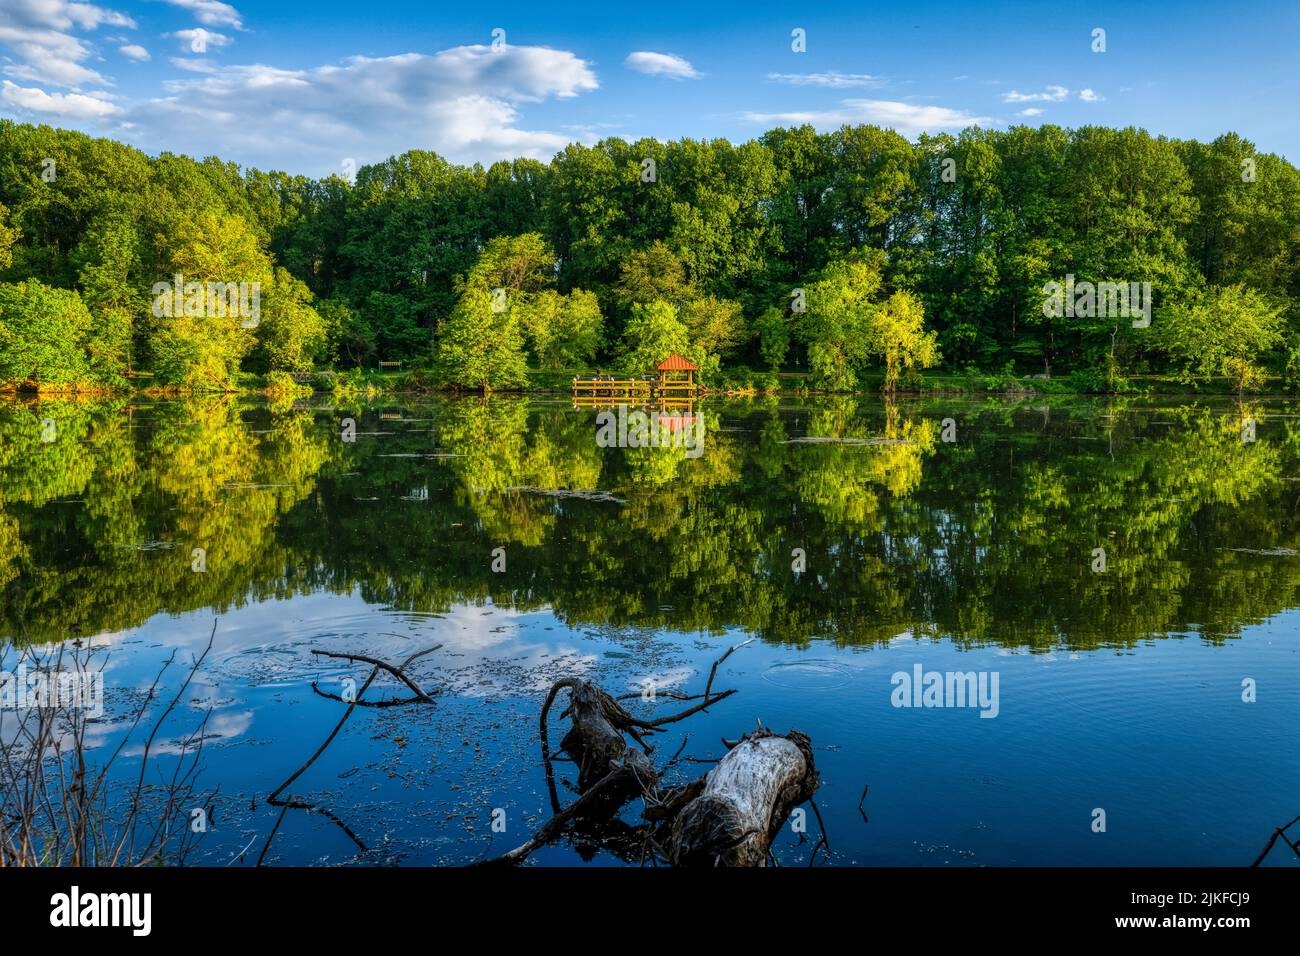 Una vista panoramica di un lago tranquillo che riflette un'alcova in legno e il verde sulla sua riva Foto Stock